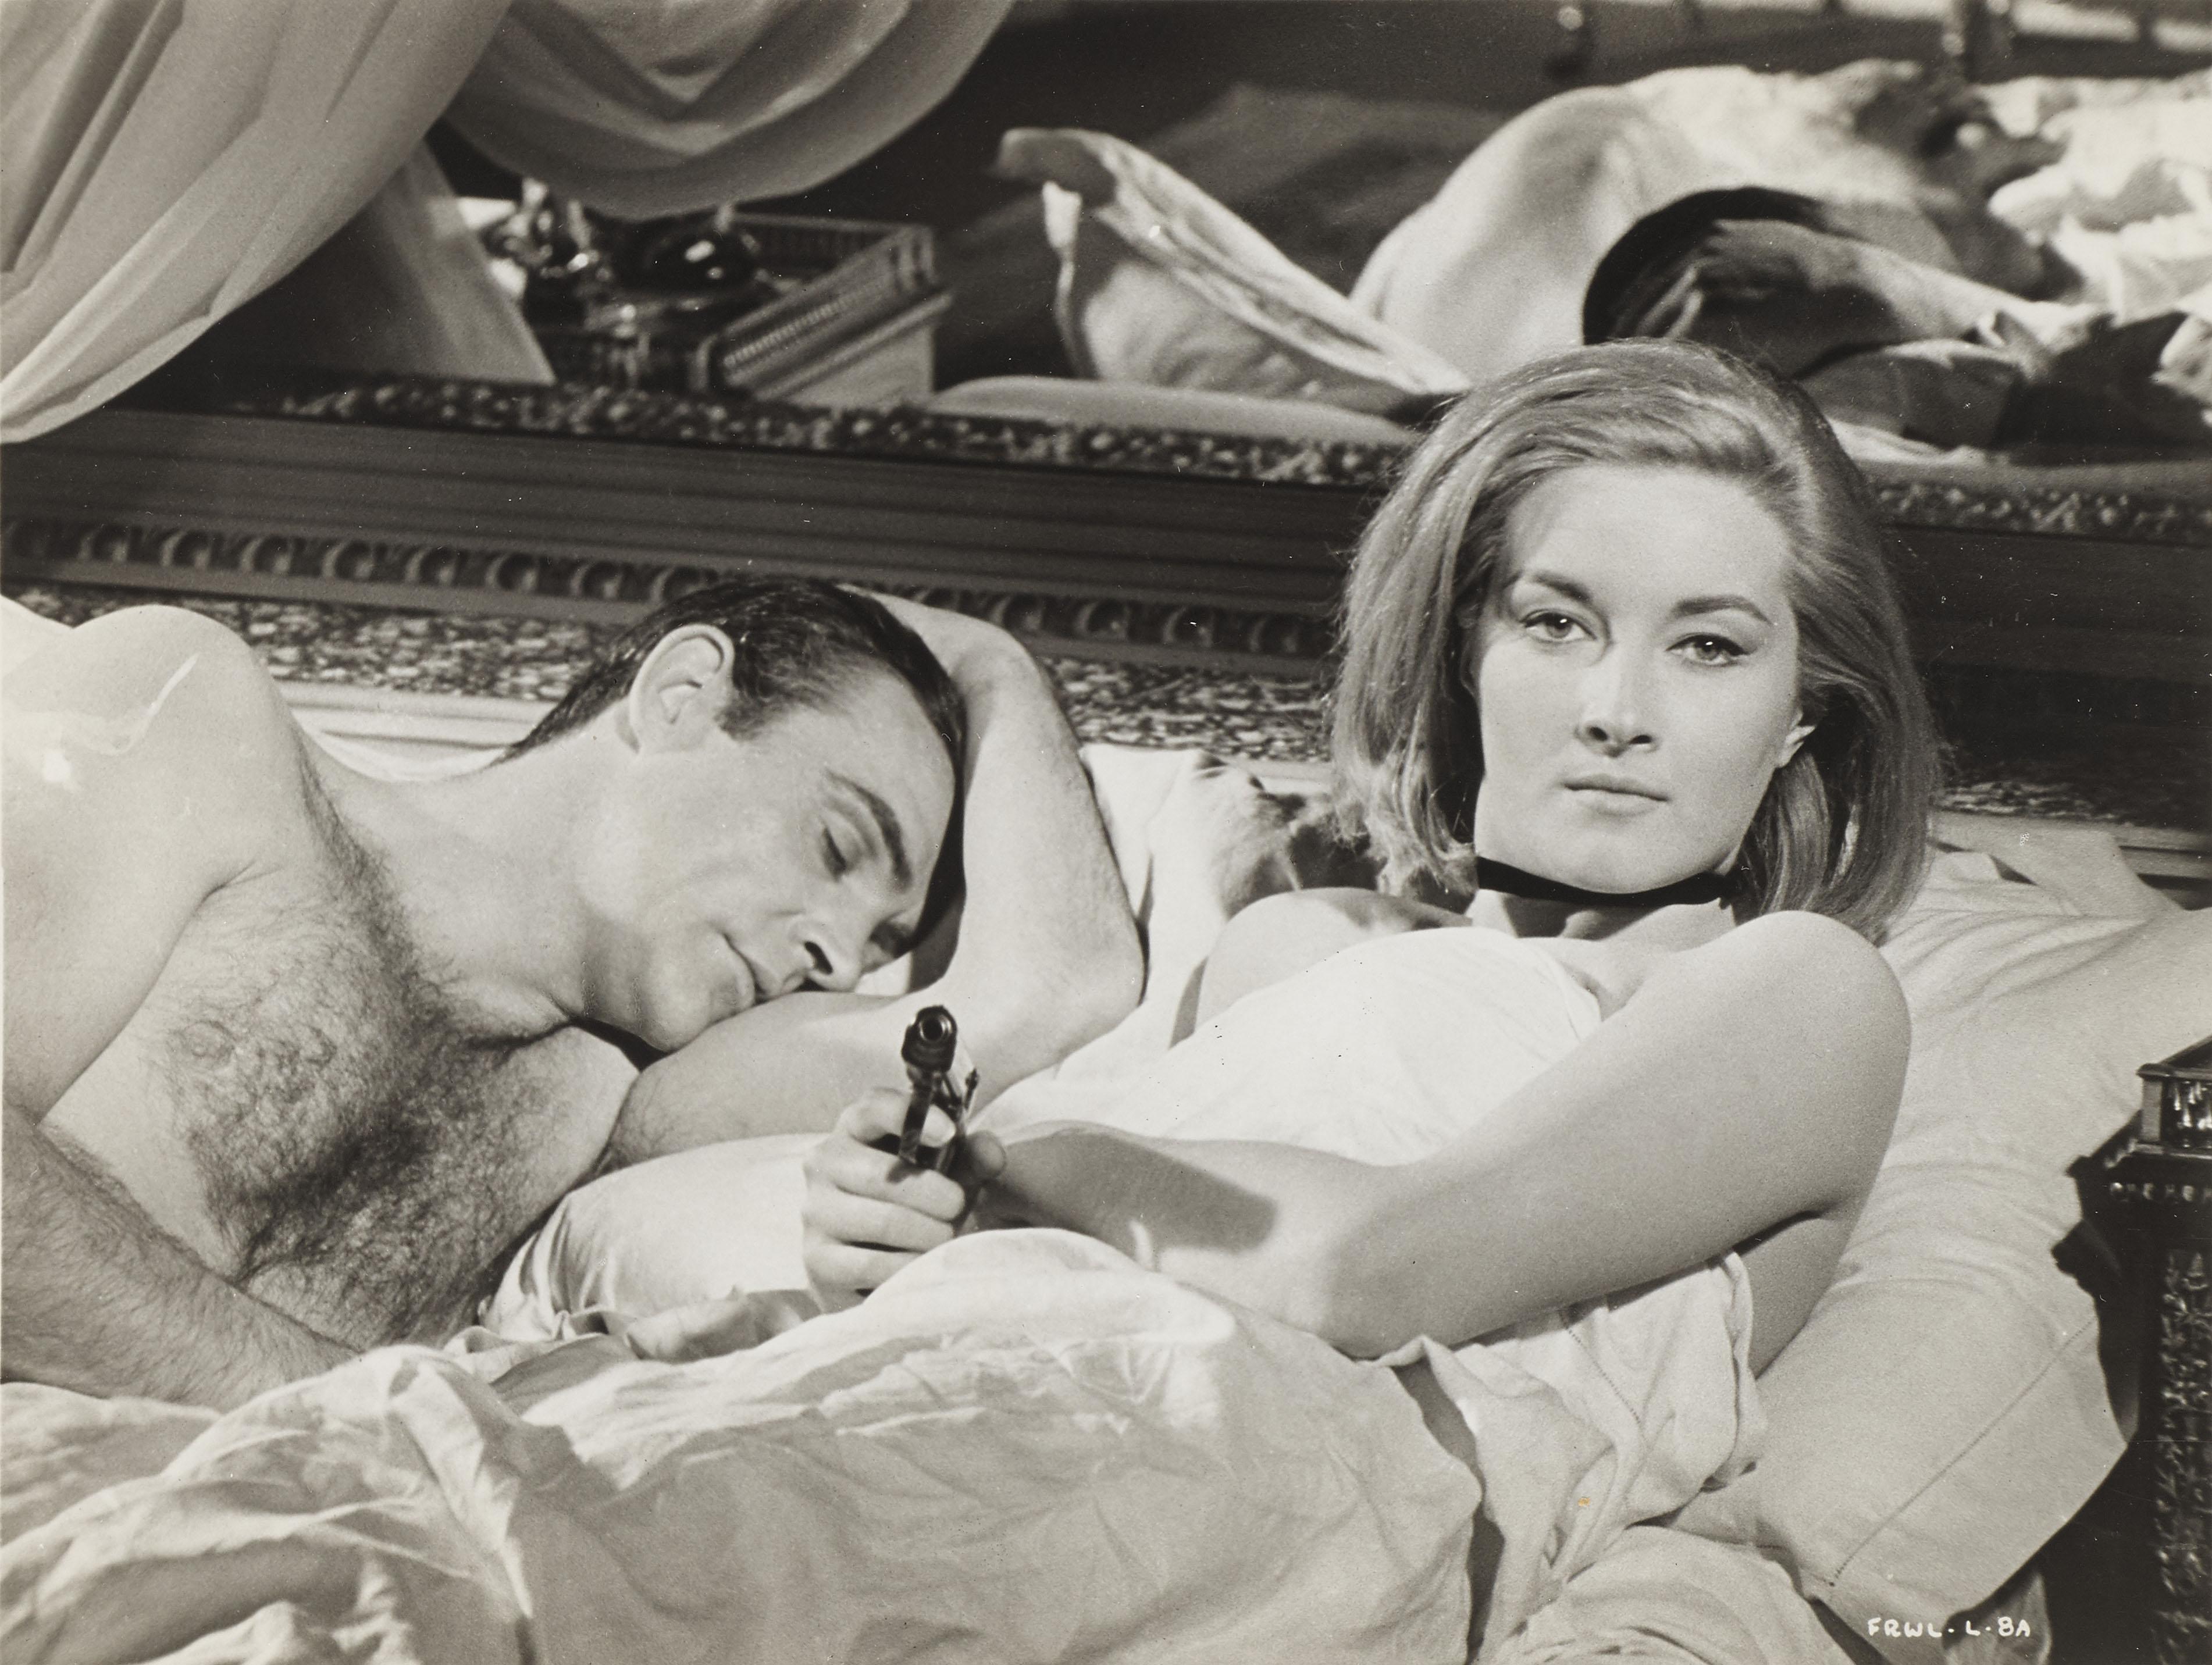 Original-Schwarz-Weiß-Fotostandbild für Sean Connerys zweiten Auftritt als 007 in From Russia with Love (1963).
die legendäre Audrey Hepburn-Komödie von 1961, Romance. Der Film wurde unter der Regie von Terence Young gedreht, die Hauptrolle spielte 